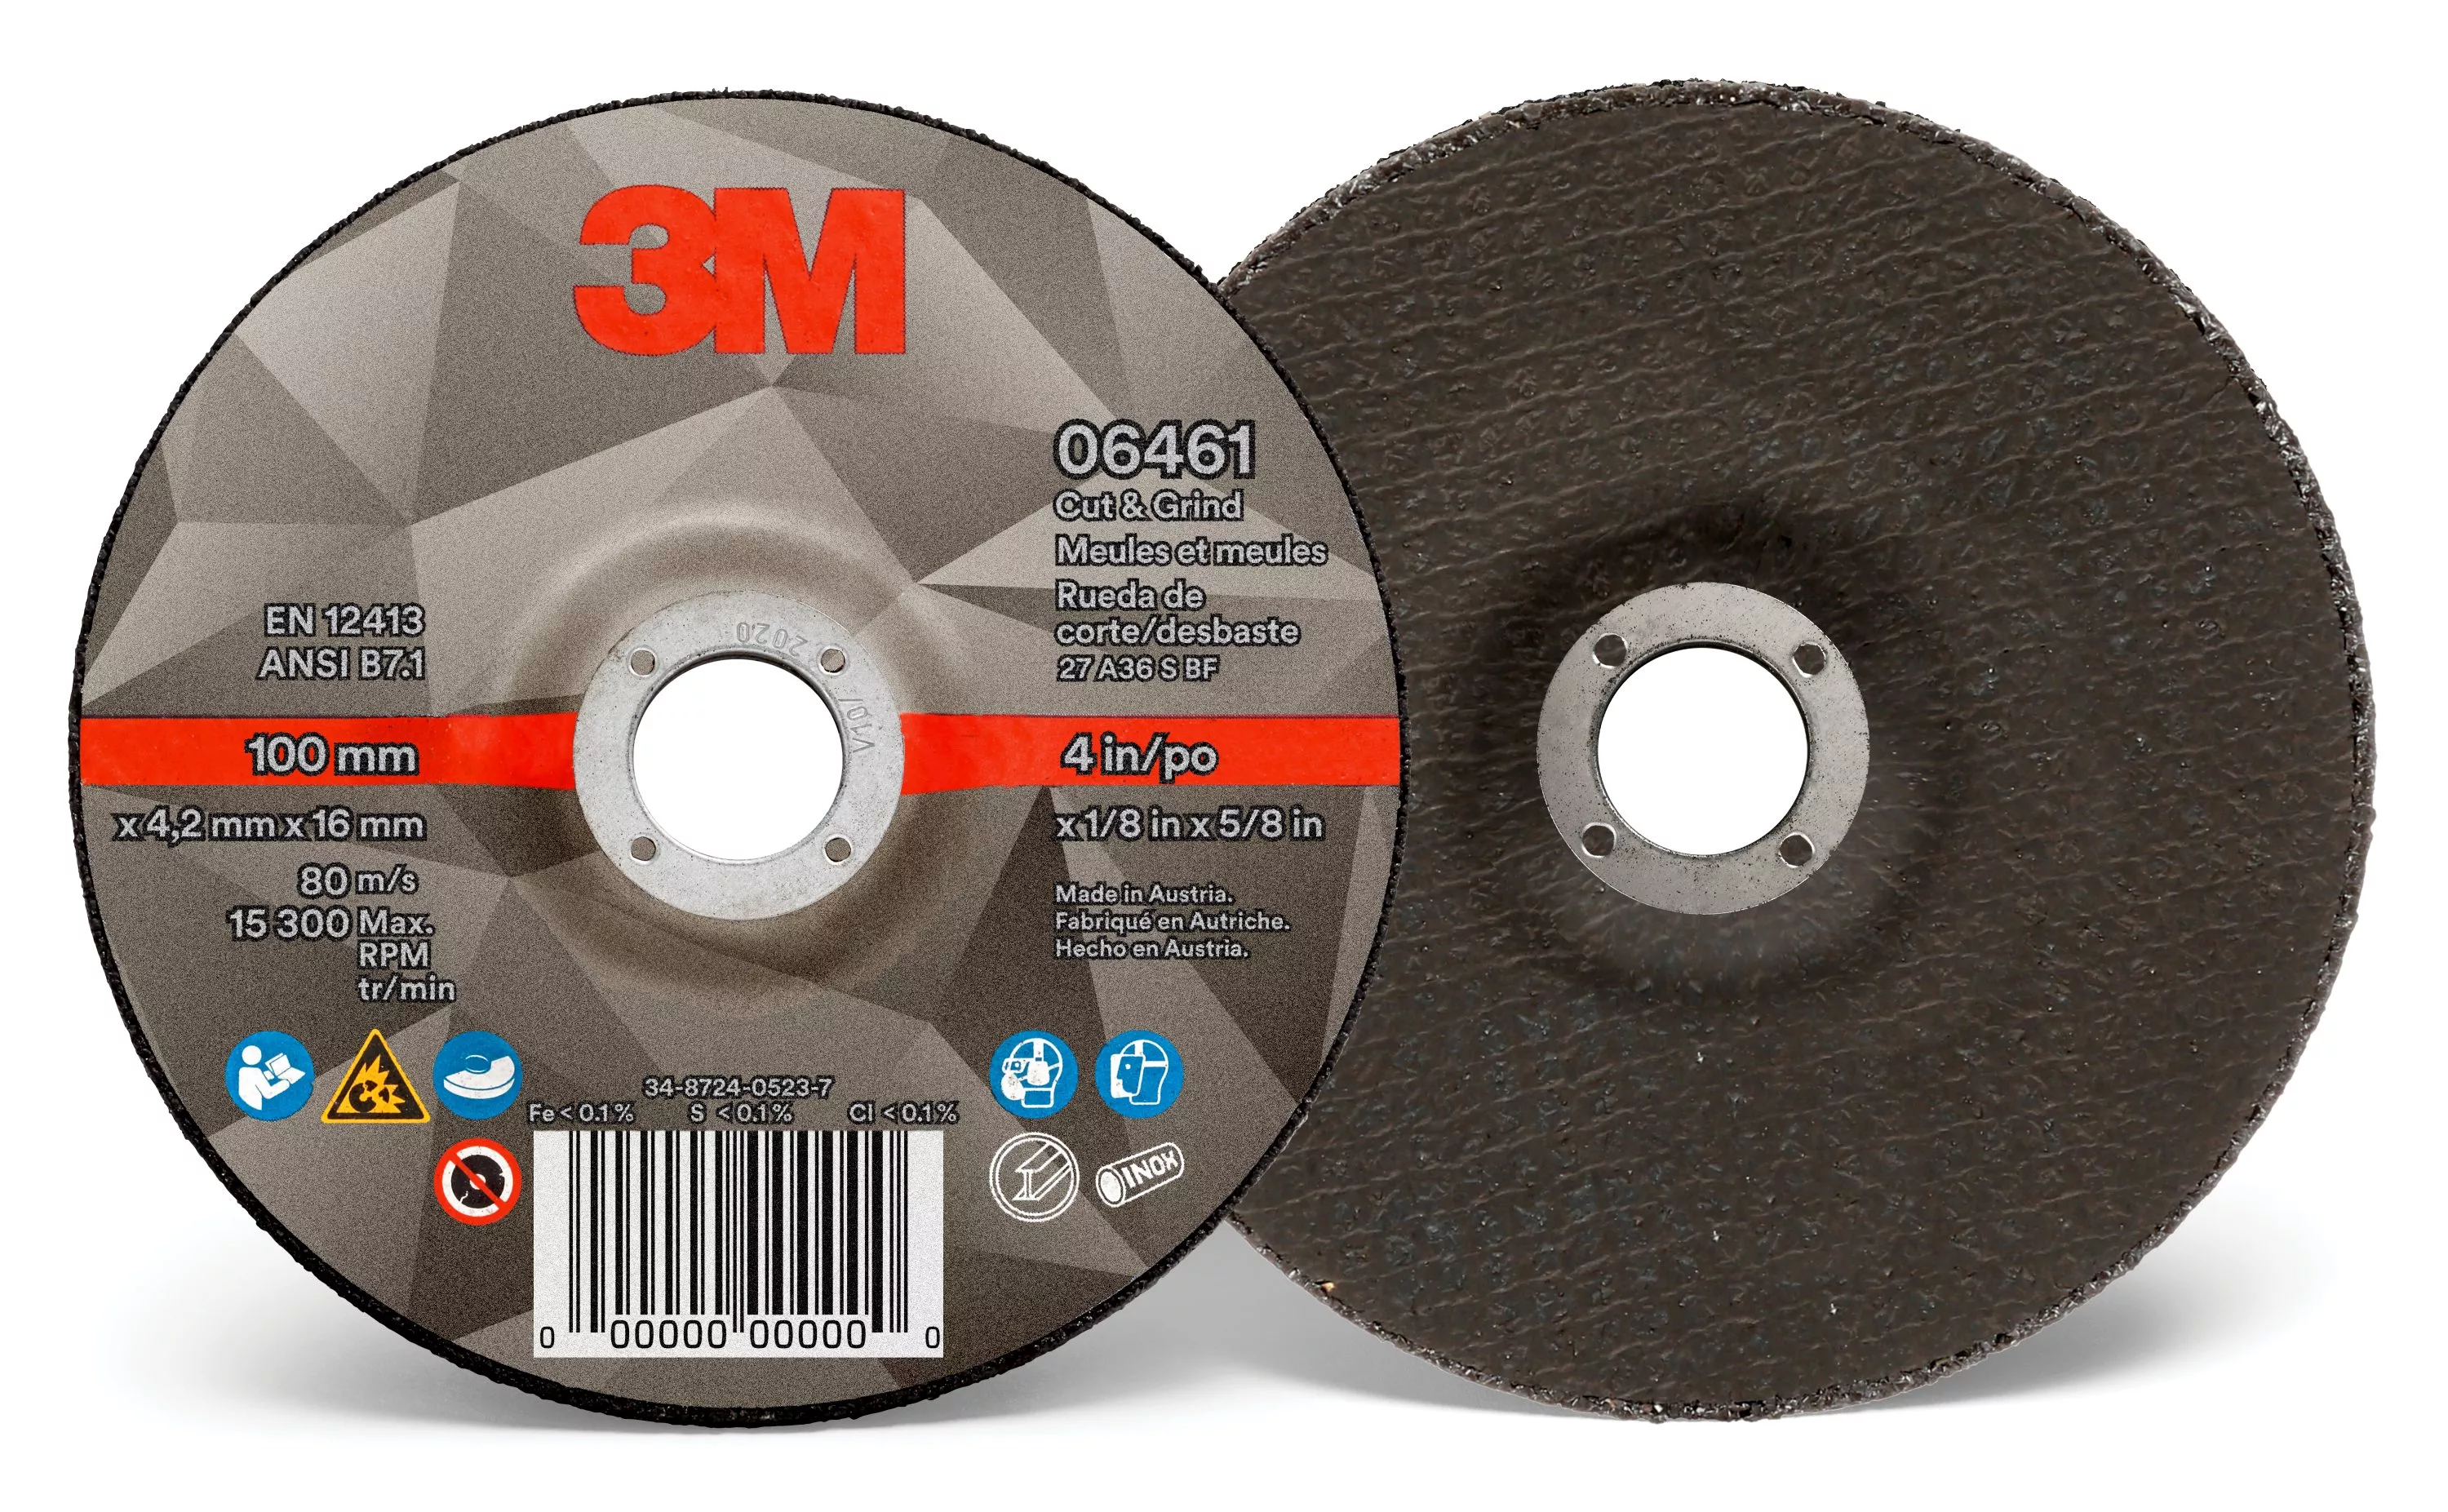 3M™ Cut & Grind Wheel, 06461, Type 27, 4 in x 1/8 in x 5/8 in, 10/Pac,
20 ea/Case